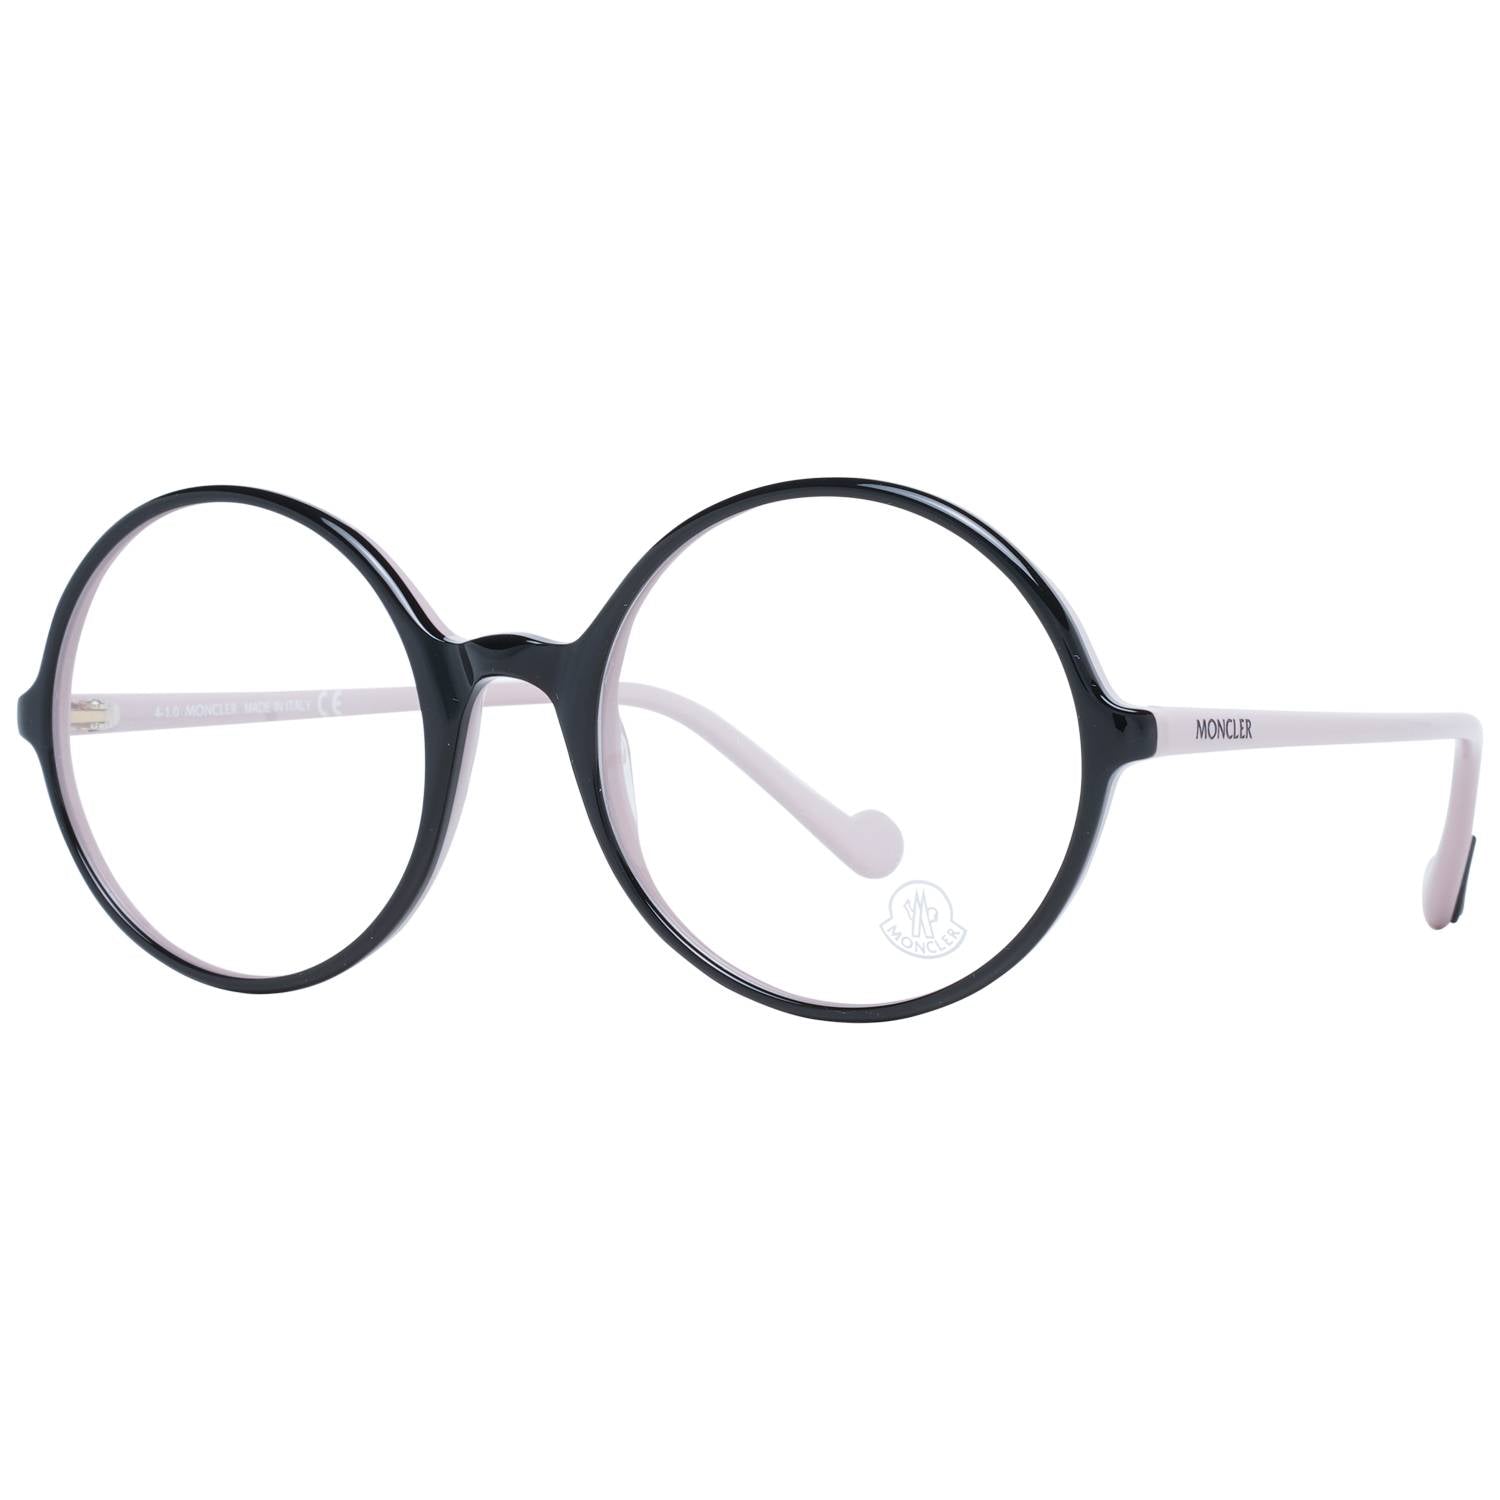 Moncler Eyeglasses Moncler Glasses Frames ML5088 005 54mm Eyeglasses Eyewear UK USA Australia 